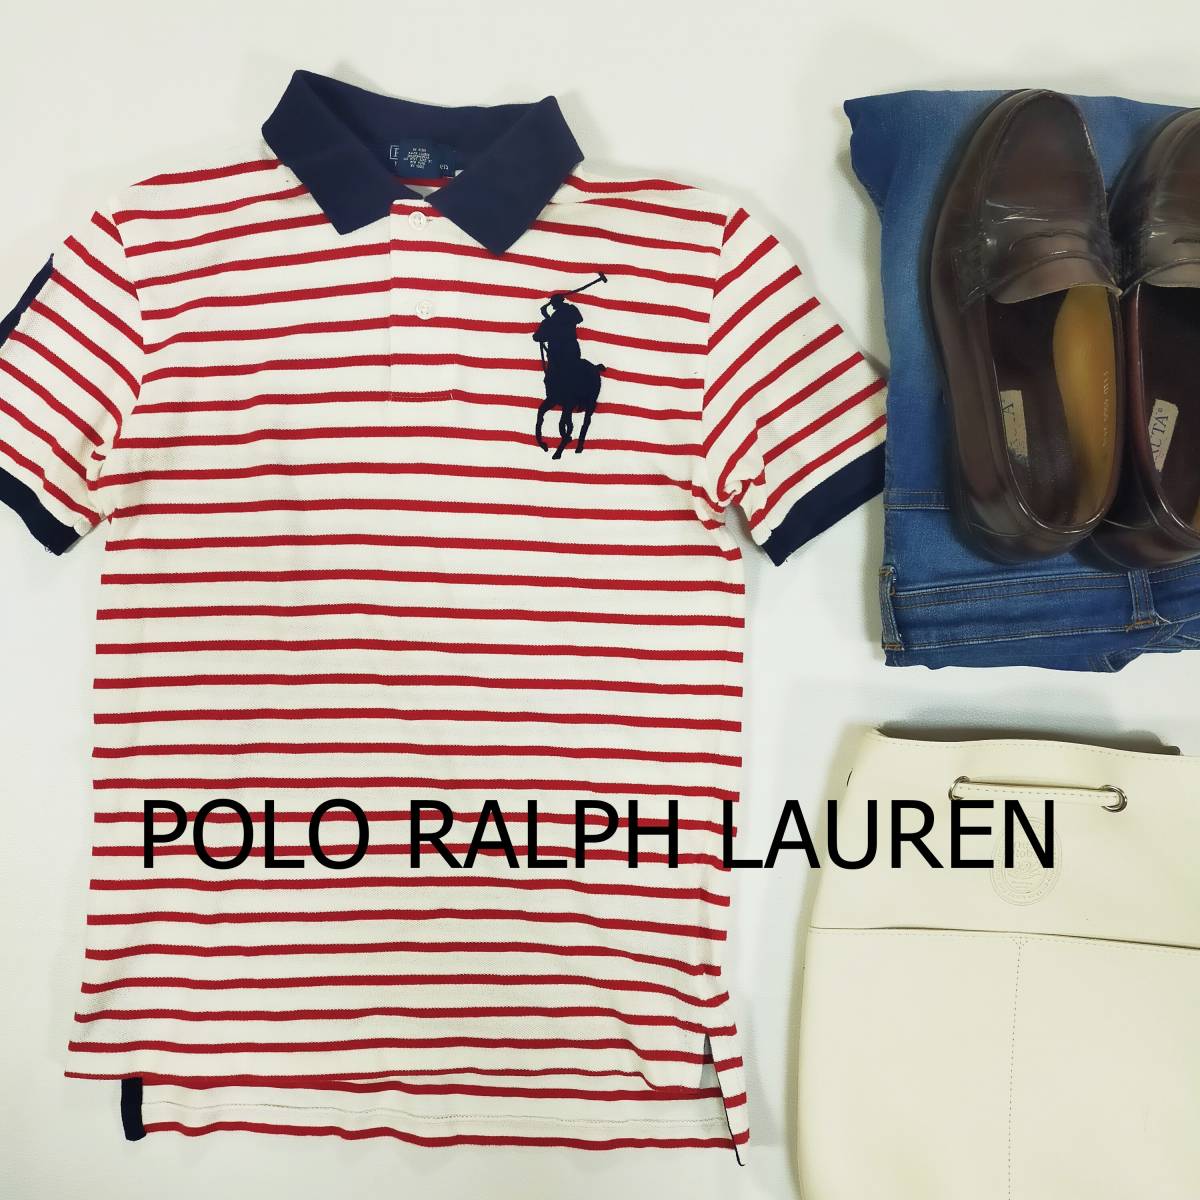 ポロ ラルフローレン POLO RALPH LAUREN ポロシャツ サイズM レッド ネイビー 赤 紺 ボーダー ビッグロゴ 半袖 刺繍ロゴ ハーフボタン 2025